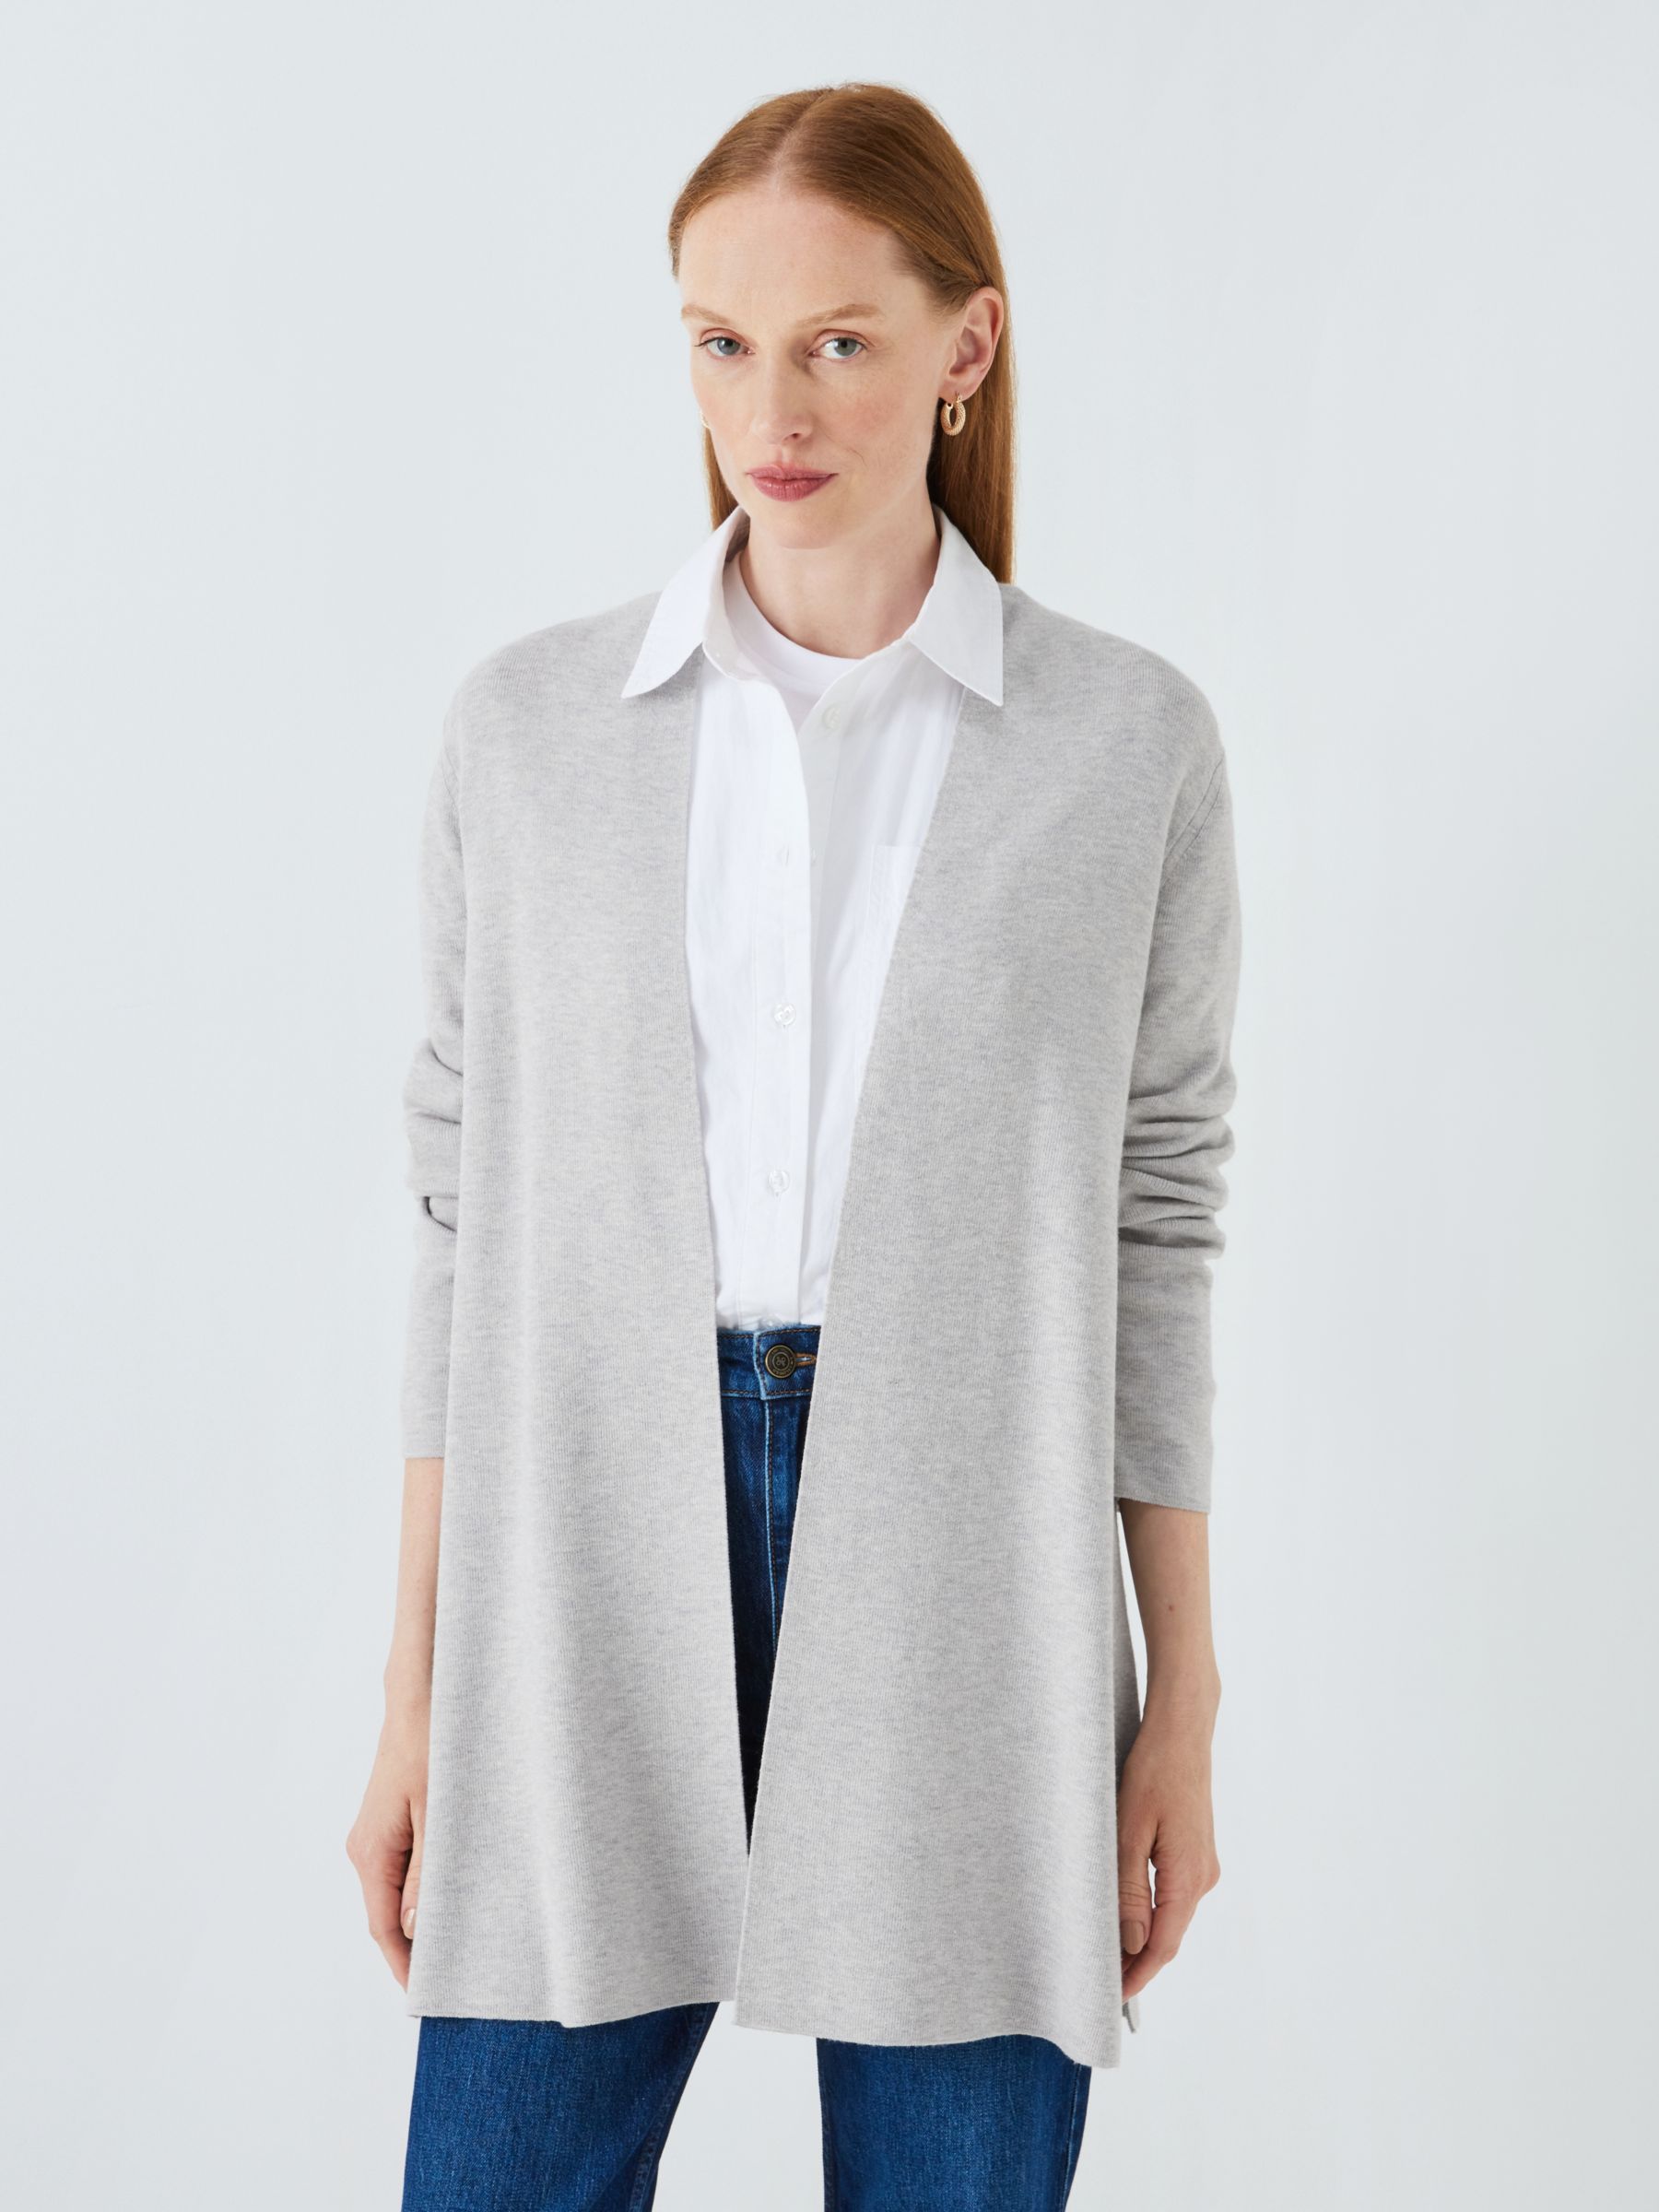 Women's Knitwear - Cardigans, Grey